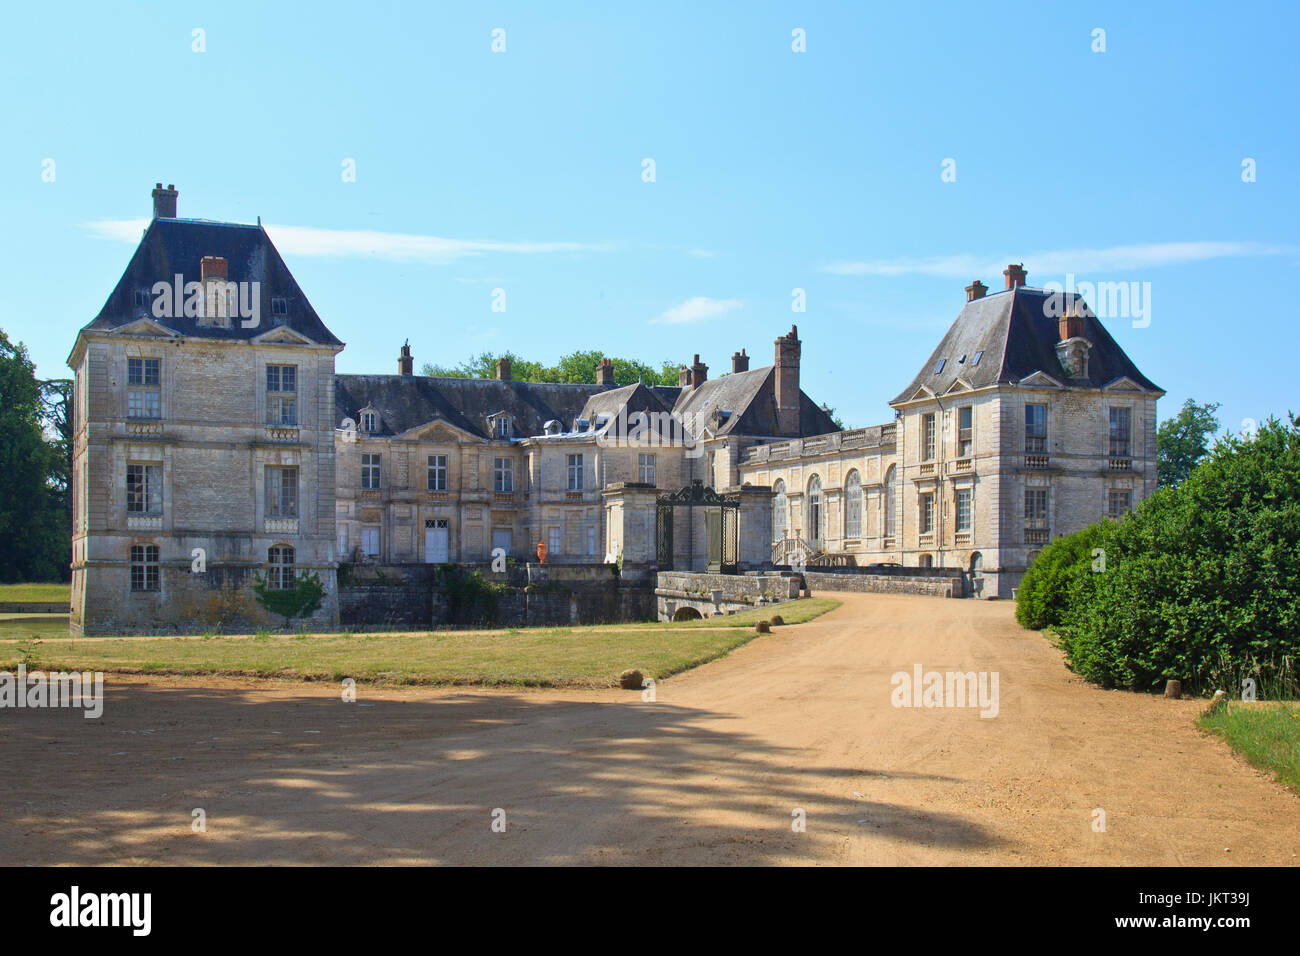 France, Cher (18), le Berry, Lignières, château du XVIIe siècle // France, Indre, Berry region, Lignieres, 17th century castle Stock Photo